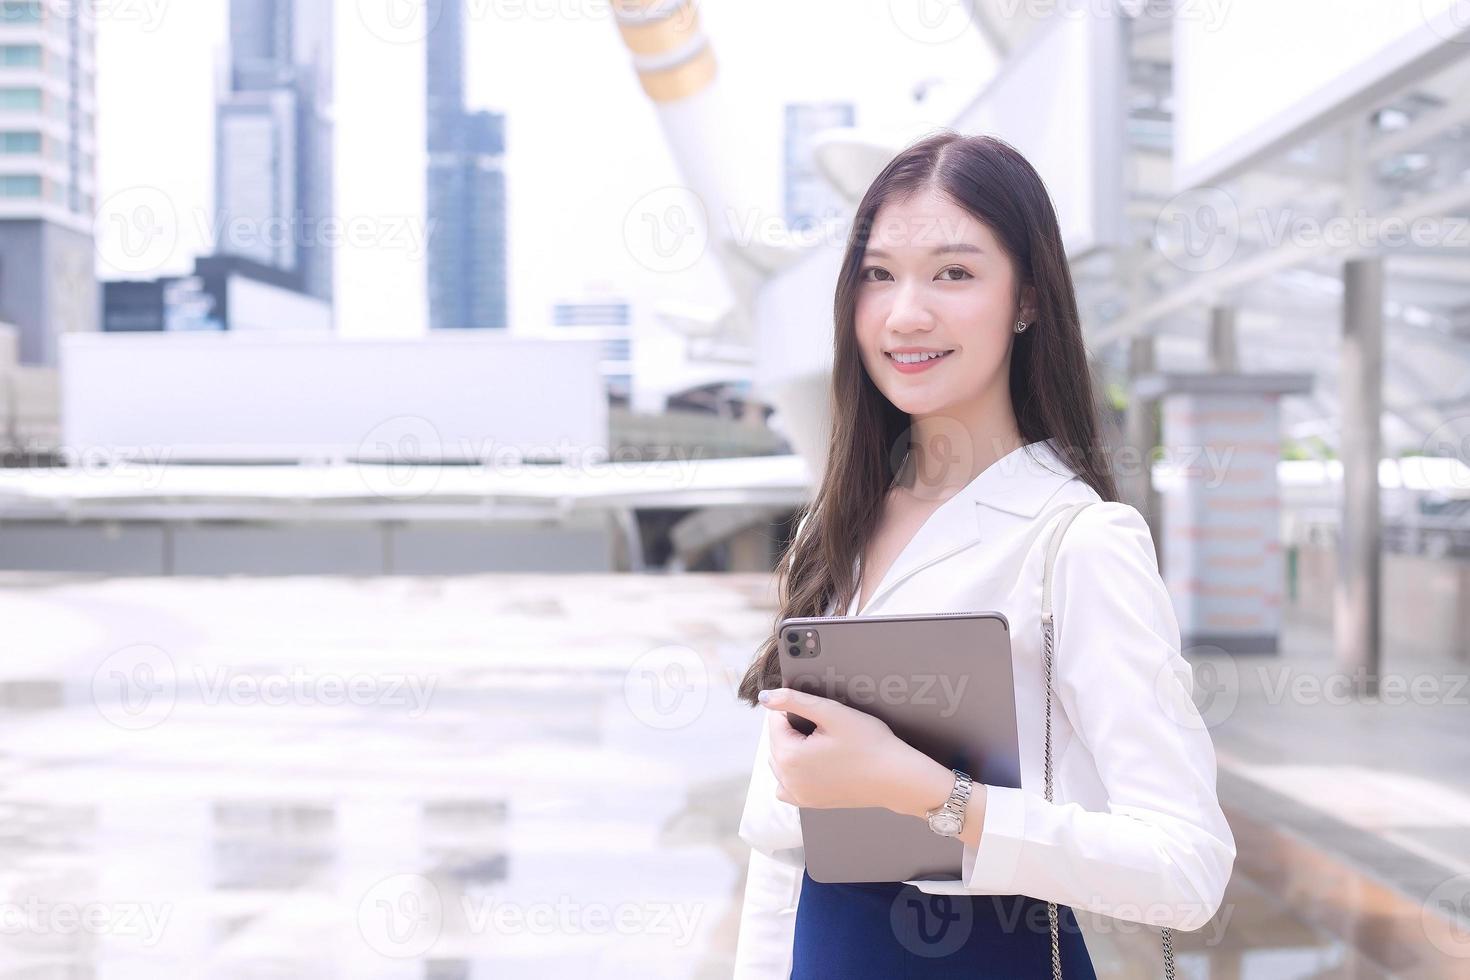 jovem empresária asiática está indo para o escritório ou local de trabalho que ela segura o bloco de notas nas mãos no tema de fundo de negócios. foto